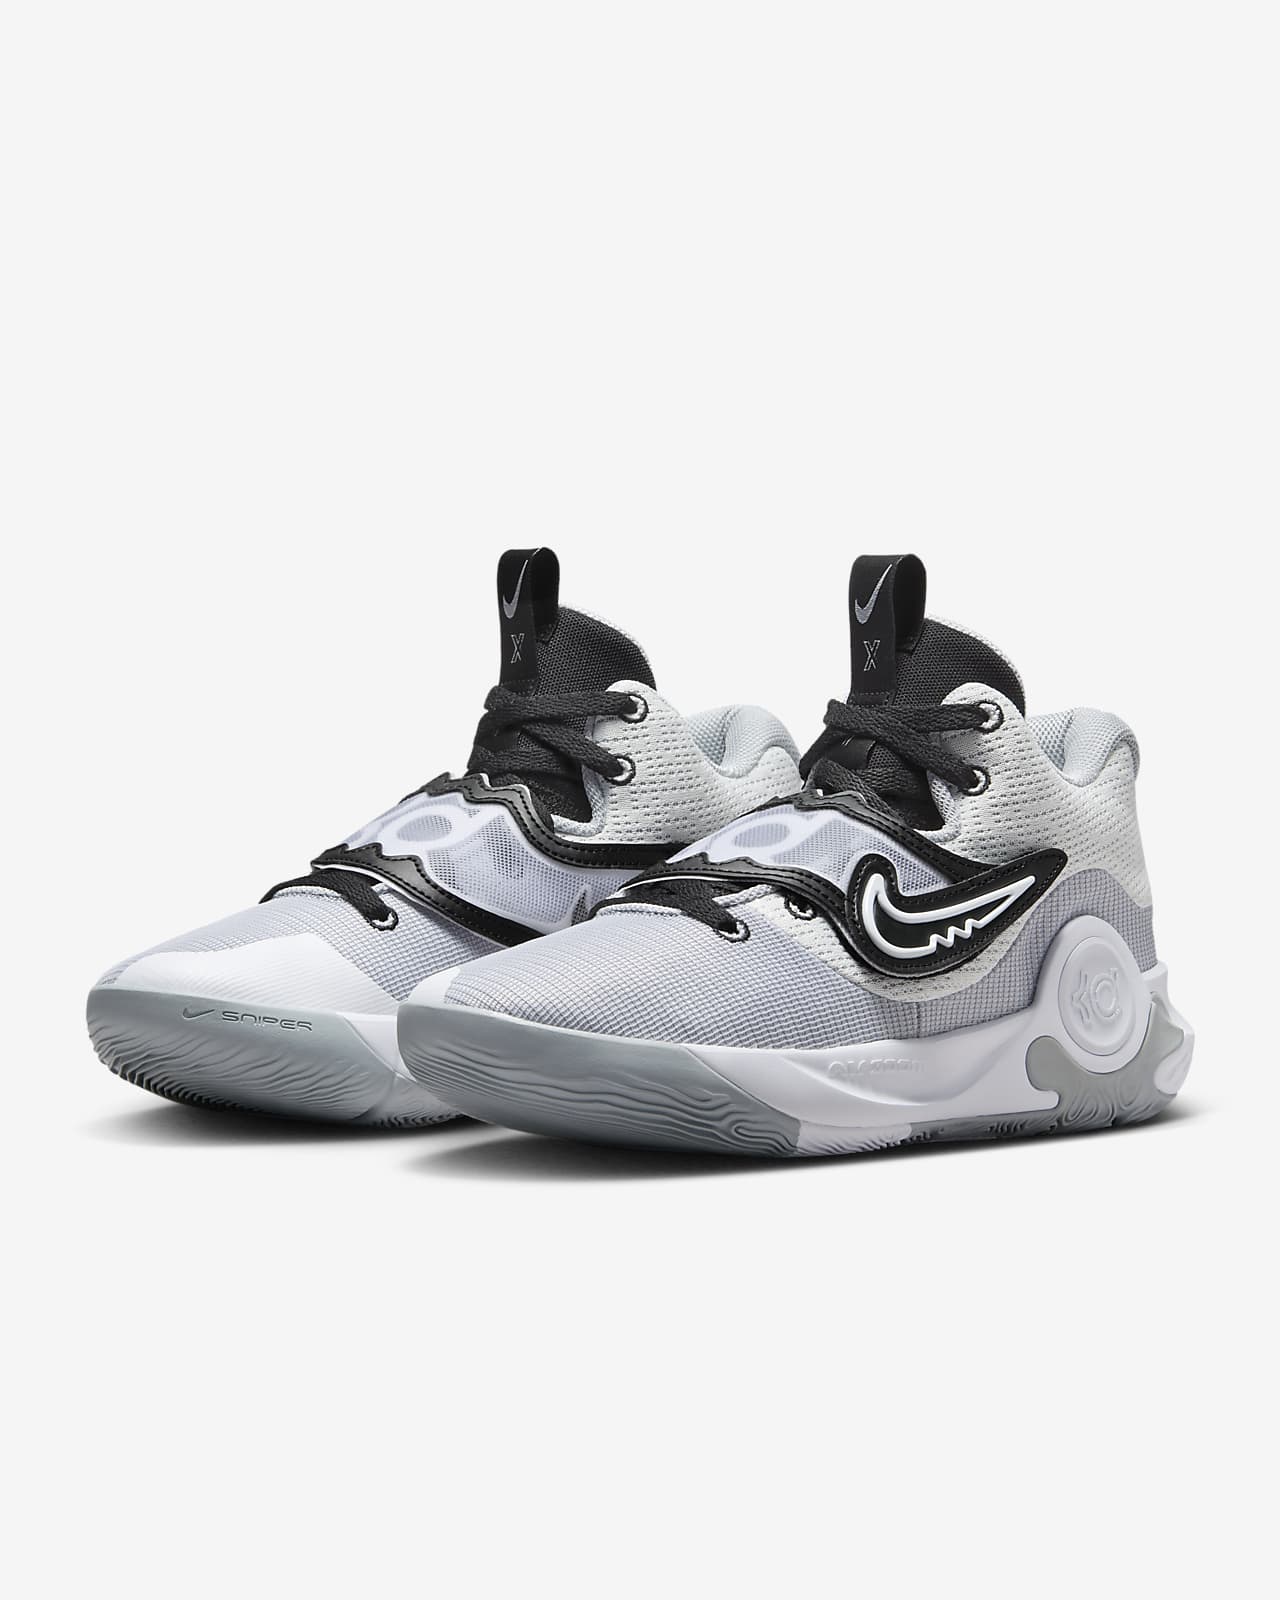 KD Trey X Basketball Shoes. Nike.com